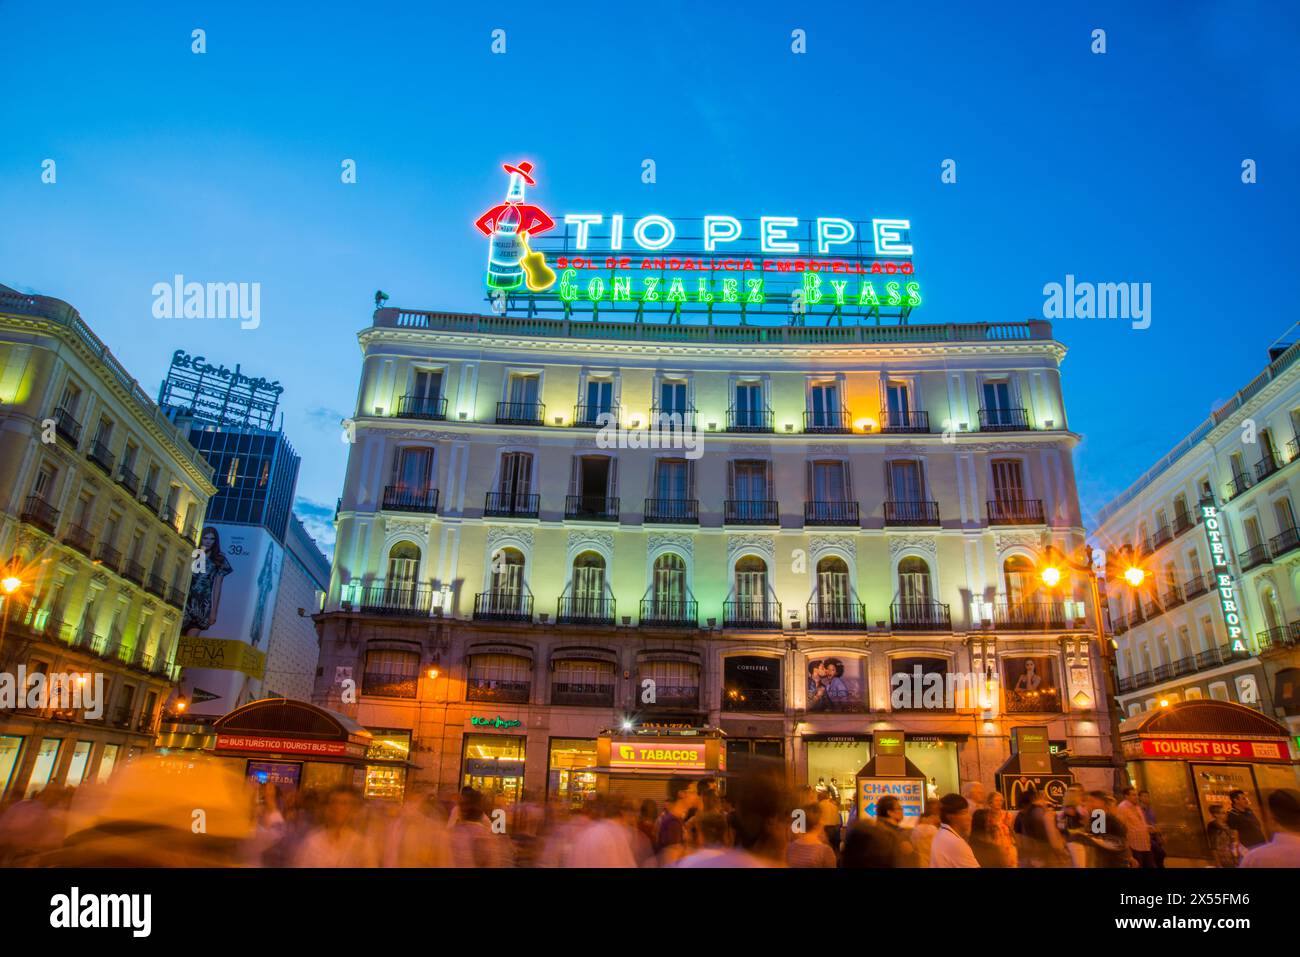 Tio Pepe Neon Schild an die neue Position, Nachtansicht. Puerta del Sol, Madrid, Spanien. Stockfoto